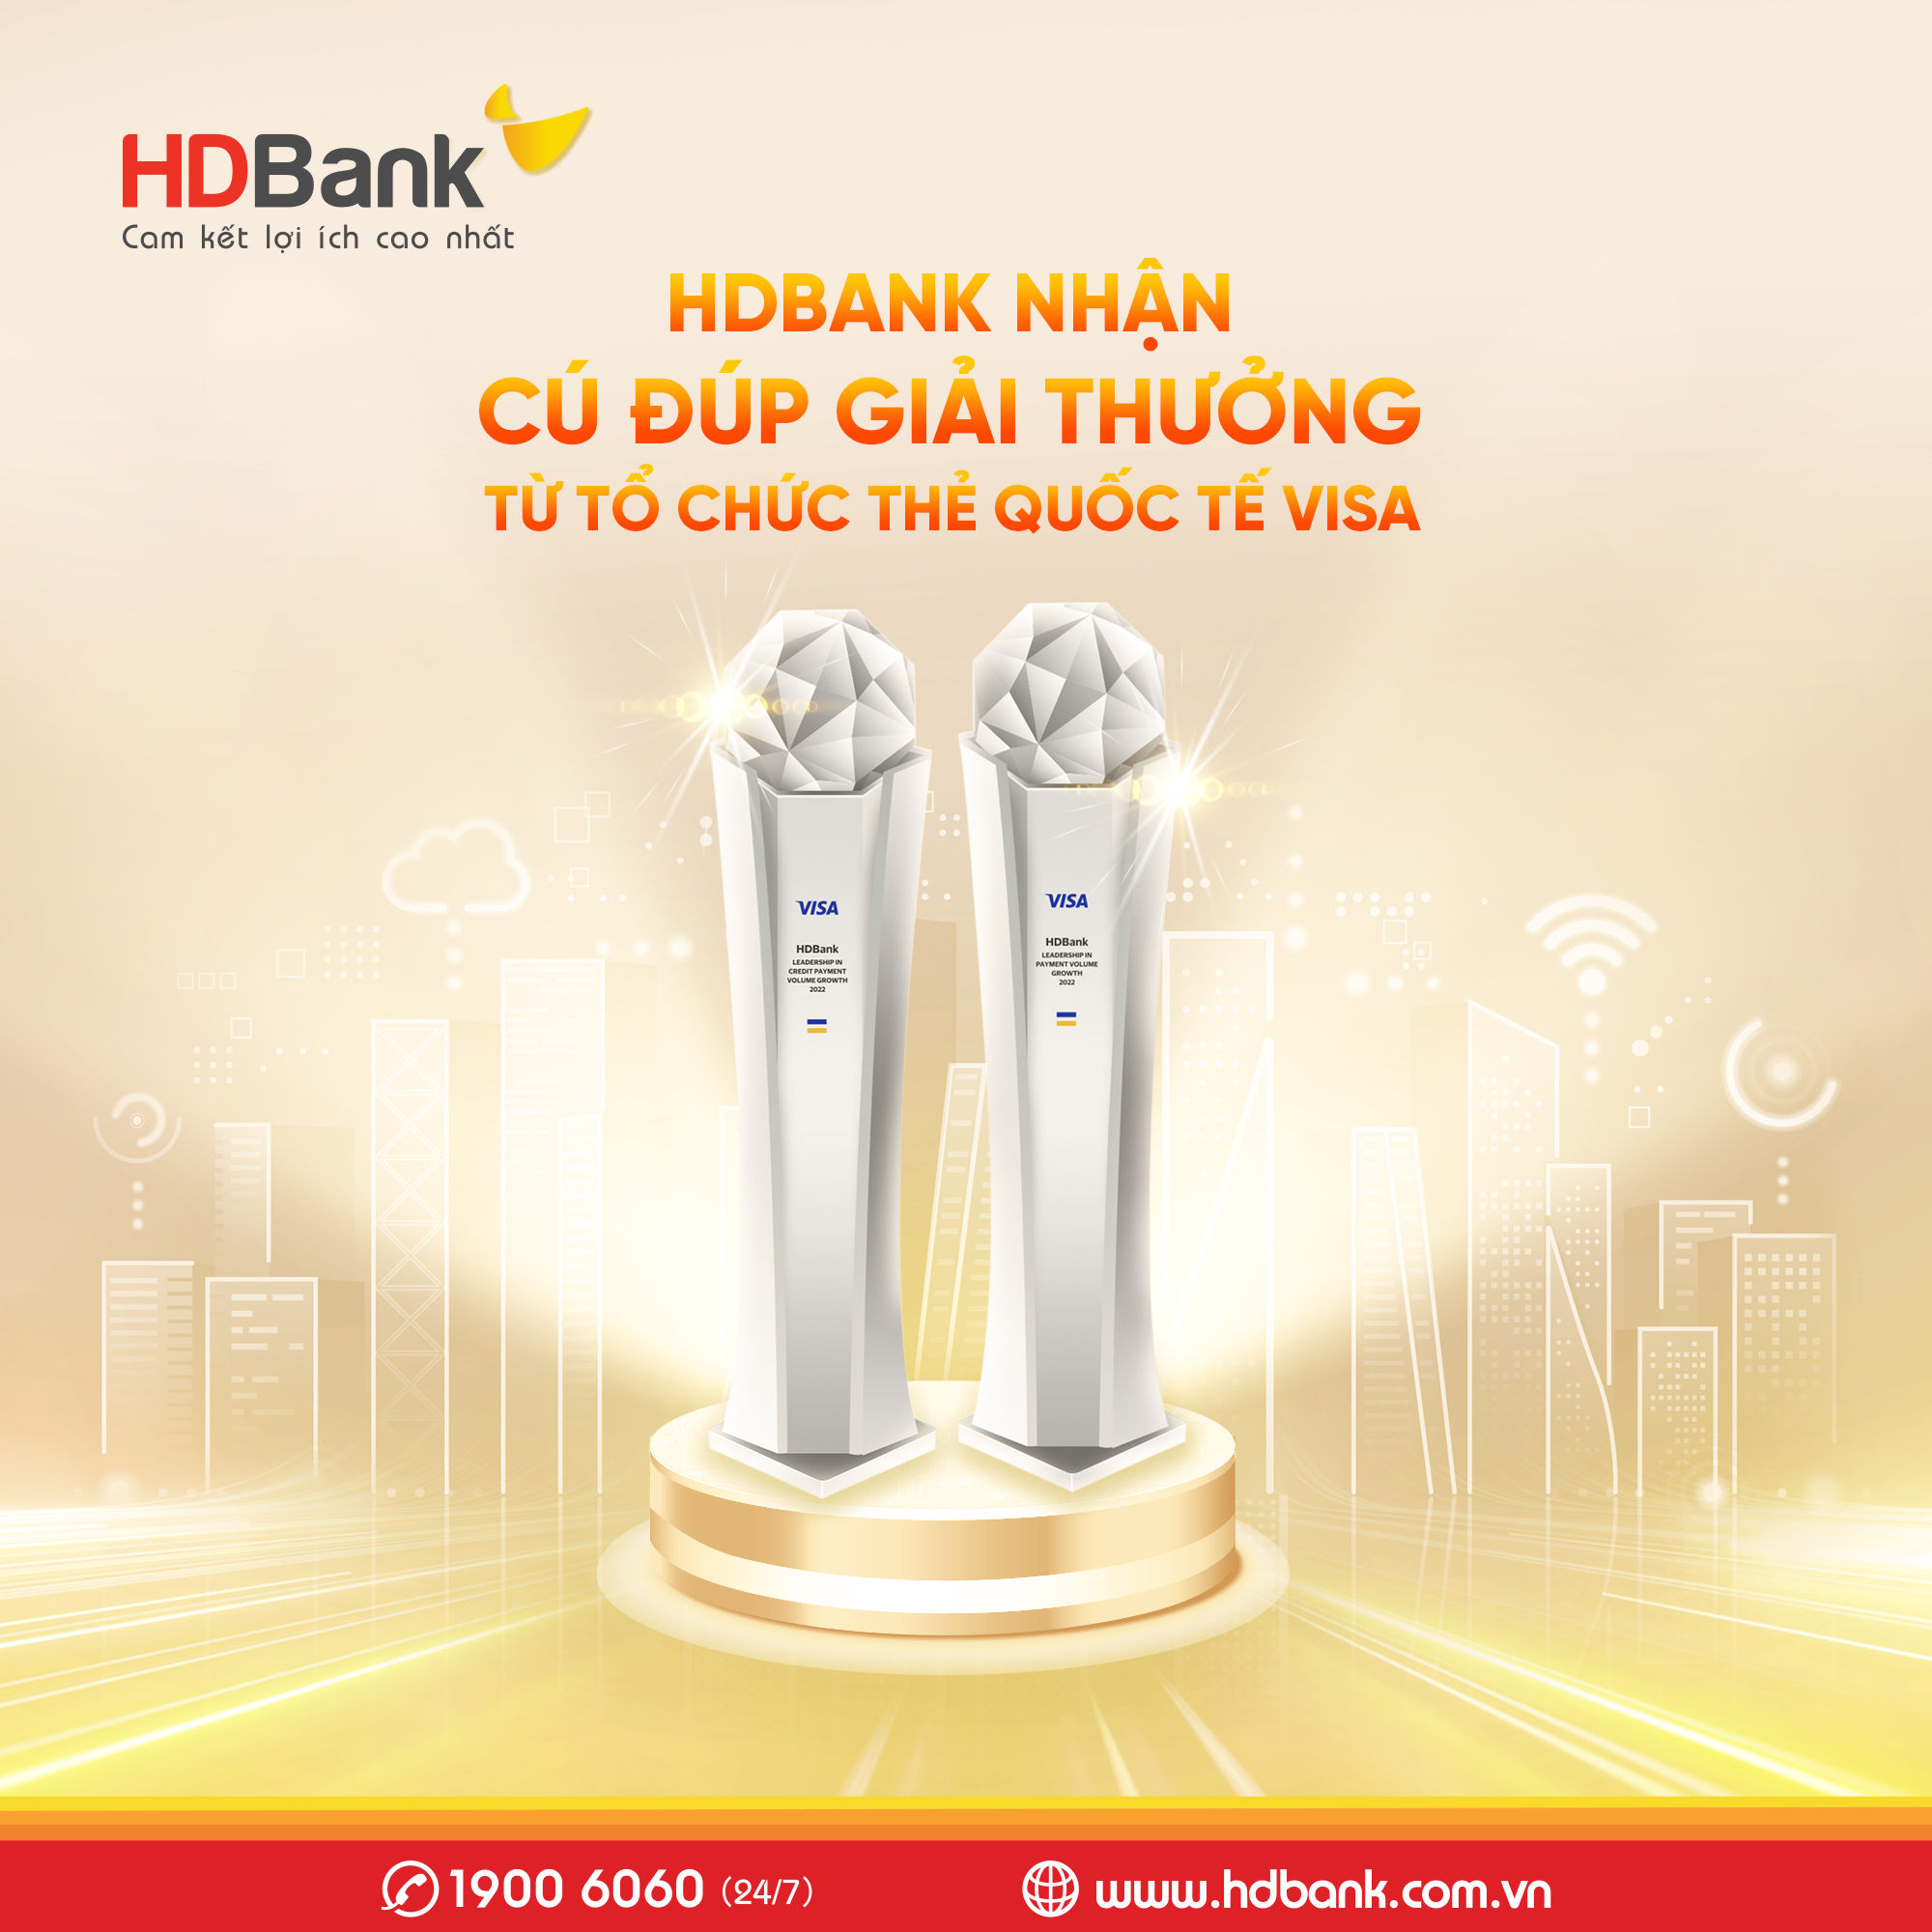 HDBank nhận cùng lúc 2 giải thưởng từ Tổ chức thẻ quốc tế Visa - Ảnh 1.